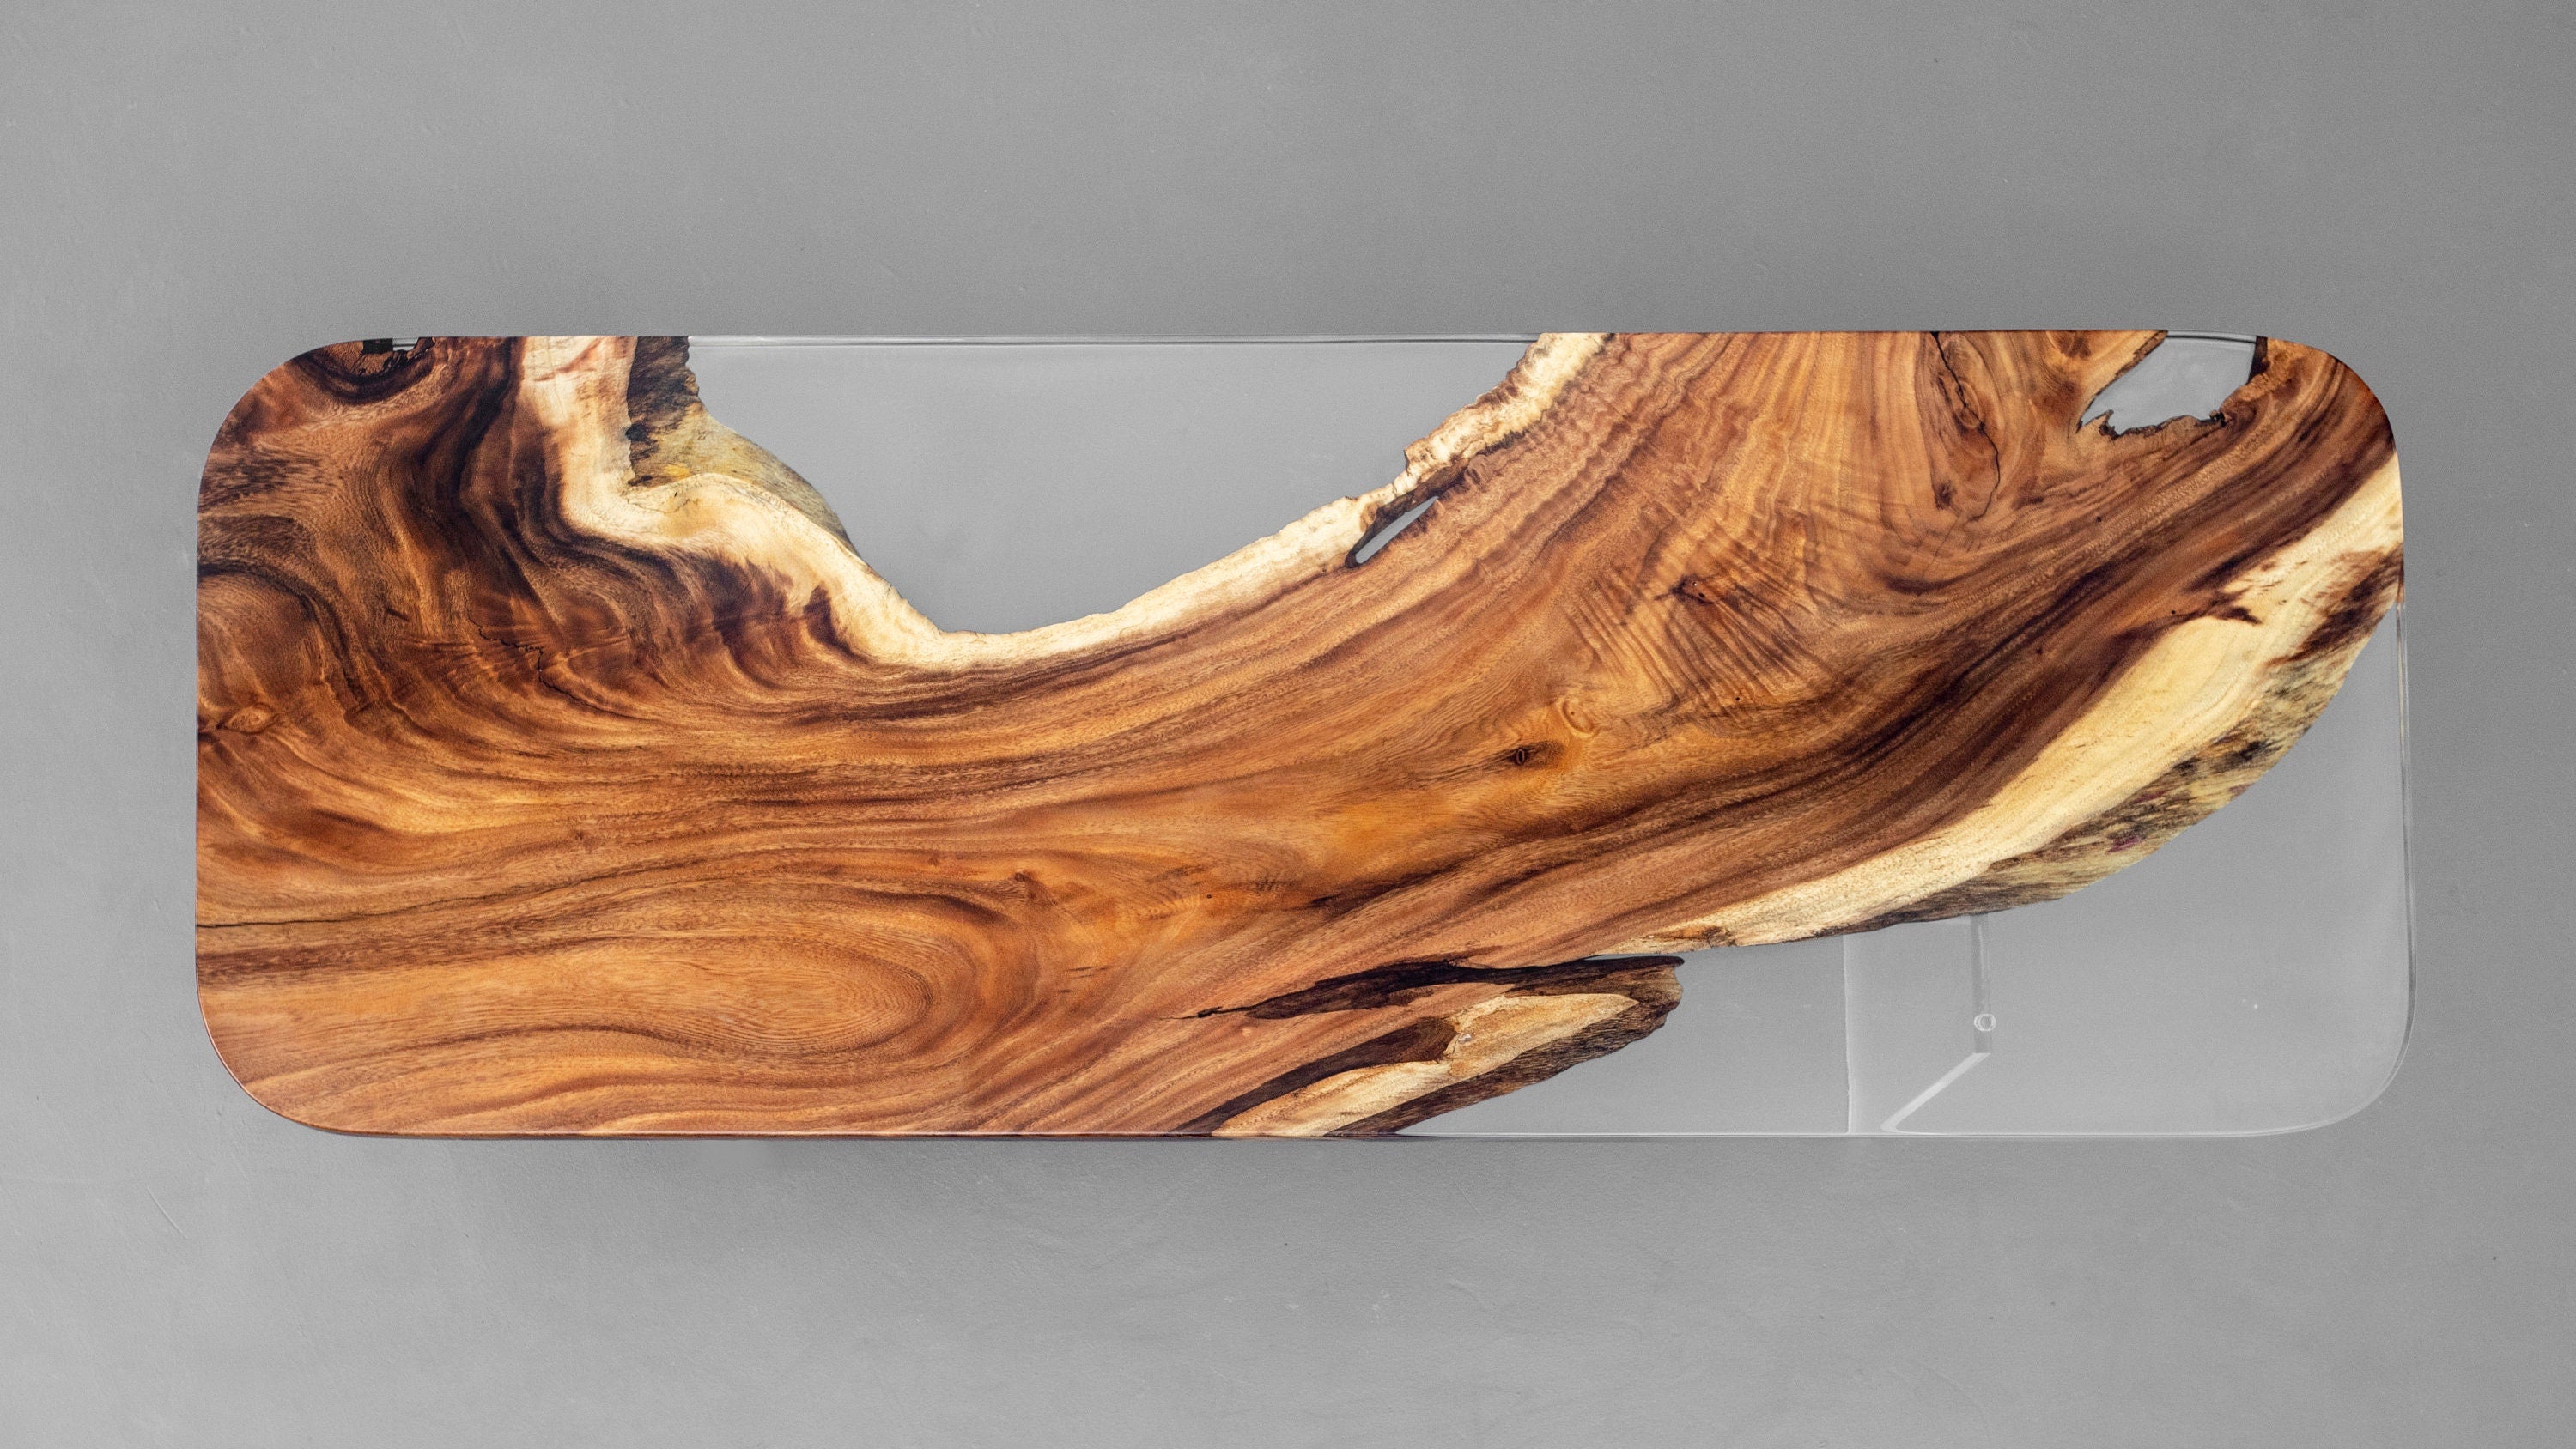 Speciell träform för att välja, handgjort bord, matbord i valnötsepoxi med levande kant